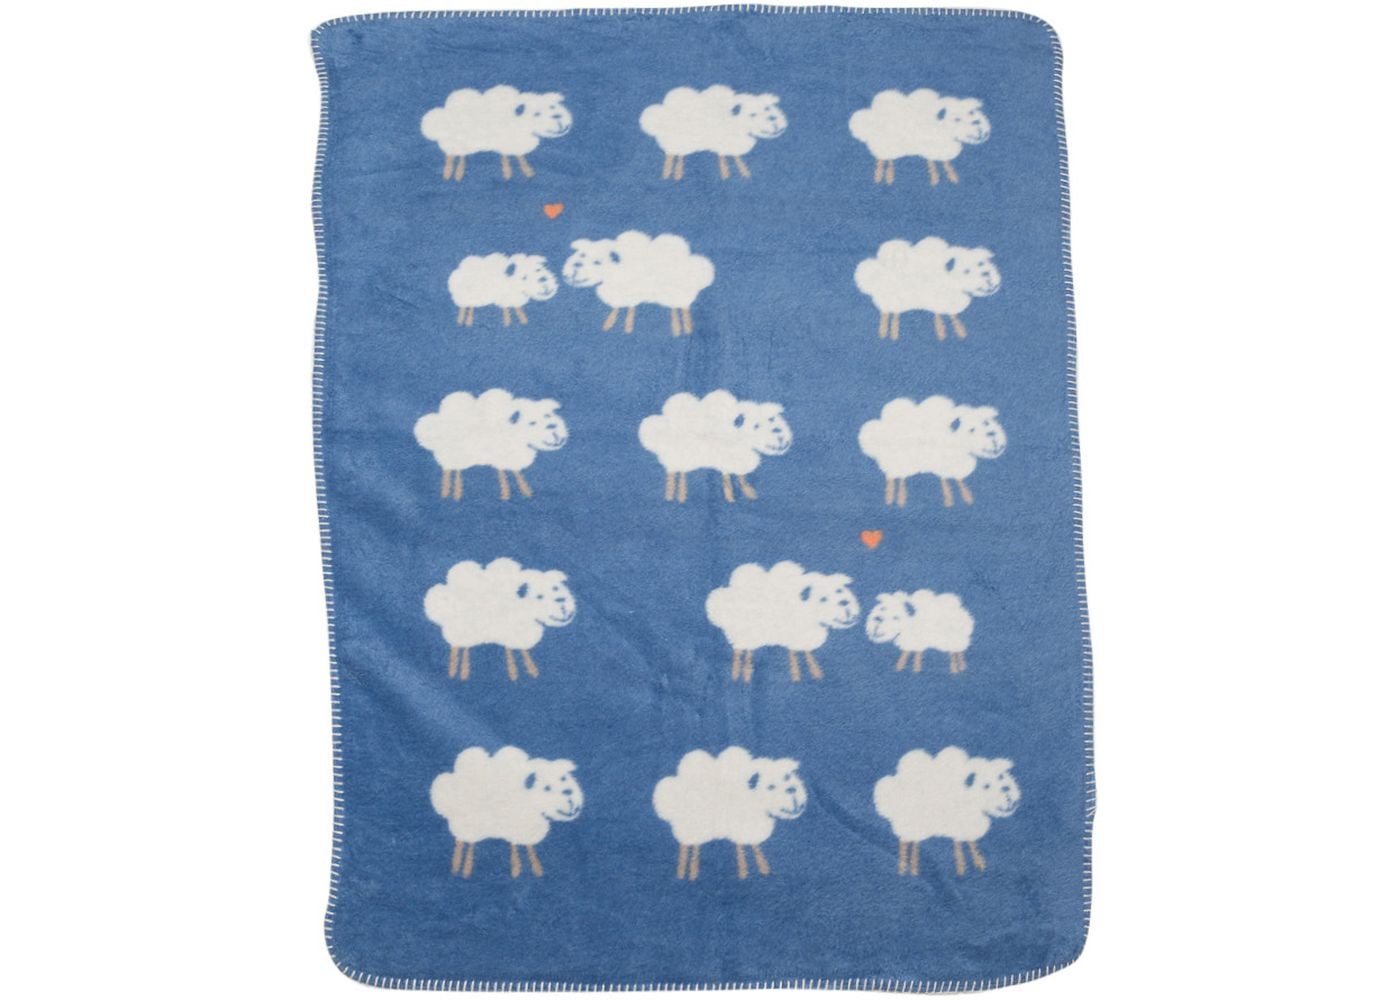 Sheep All Over Blanket - David Fussenegger